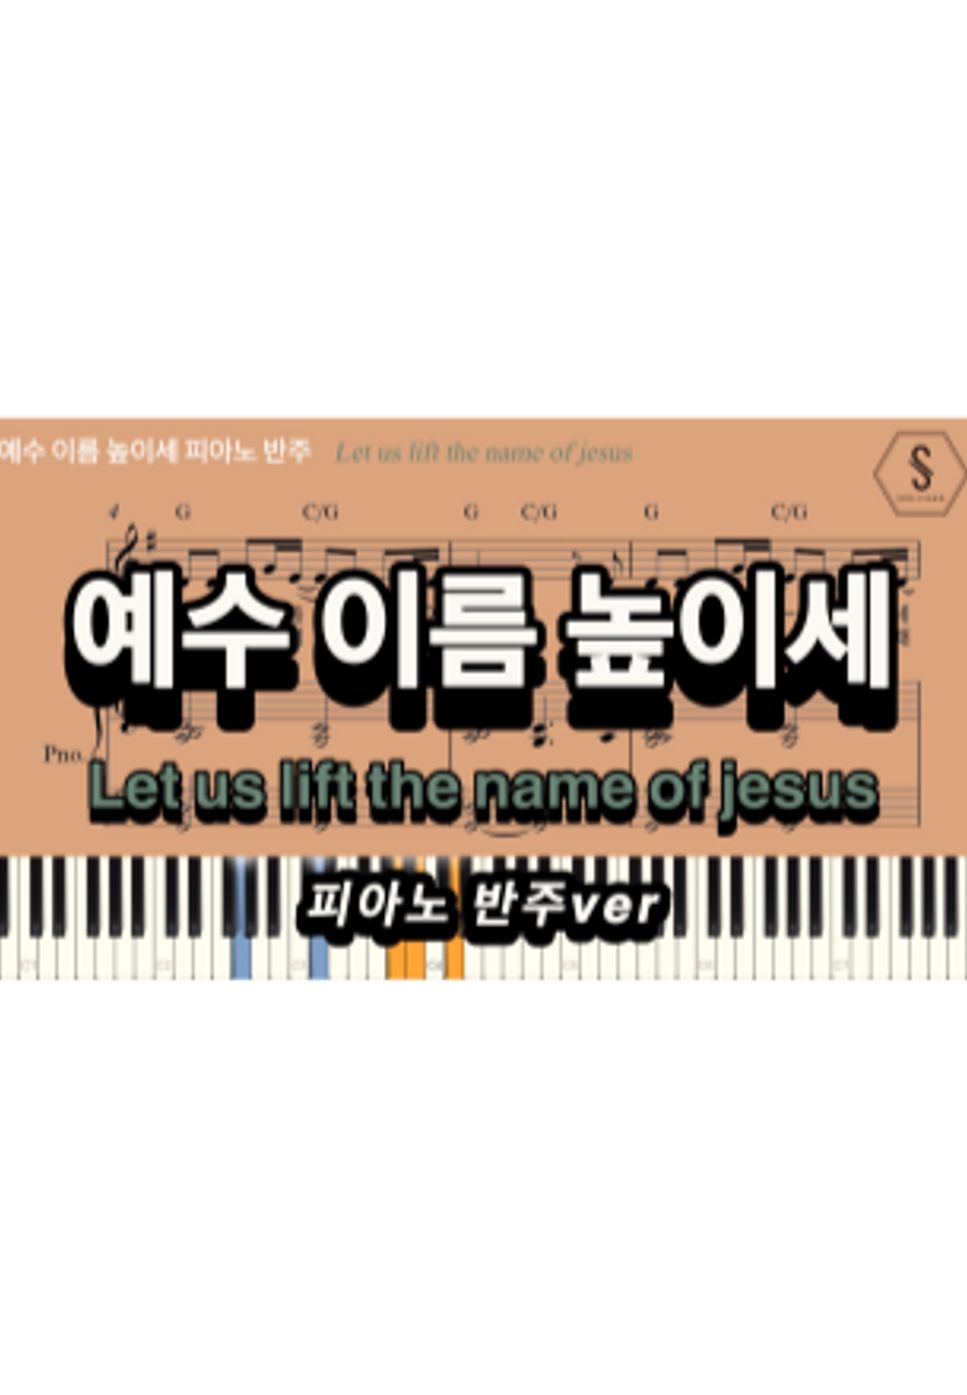 최덕신 - Let us lift the name of Jesus (piano sheet) by SOOPIANO